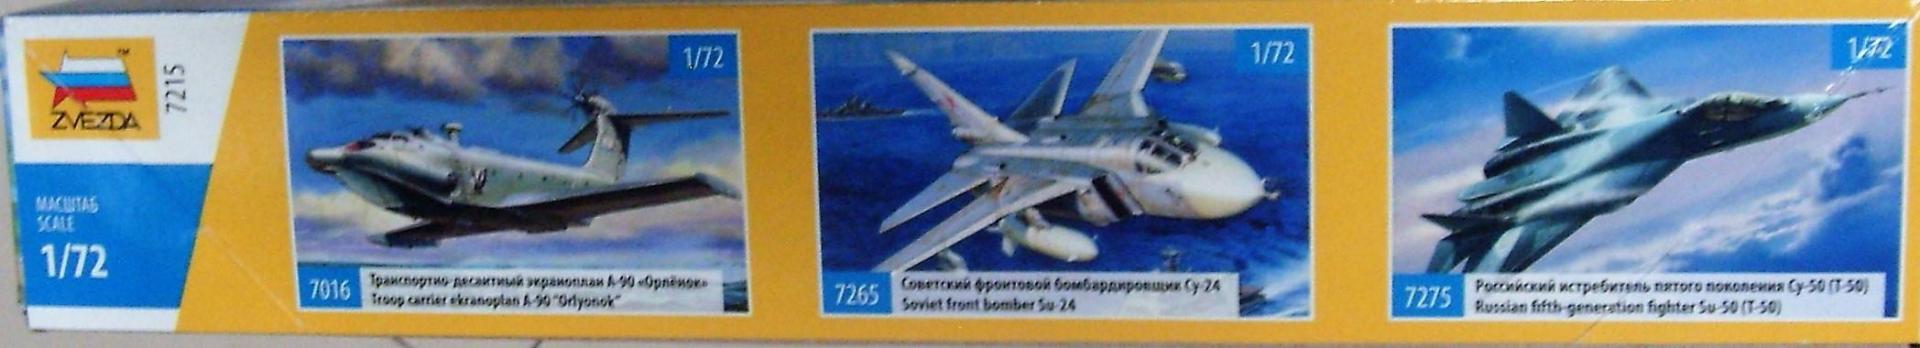 Иллюстрация 4 из 16 для Российский истребитель Су-47 "Беркут" (7215) | Лабиринт - игрушки. Источник: Соловьев  Владимир